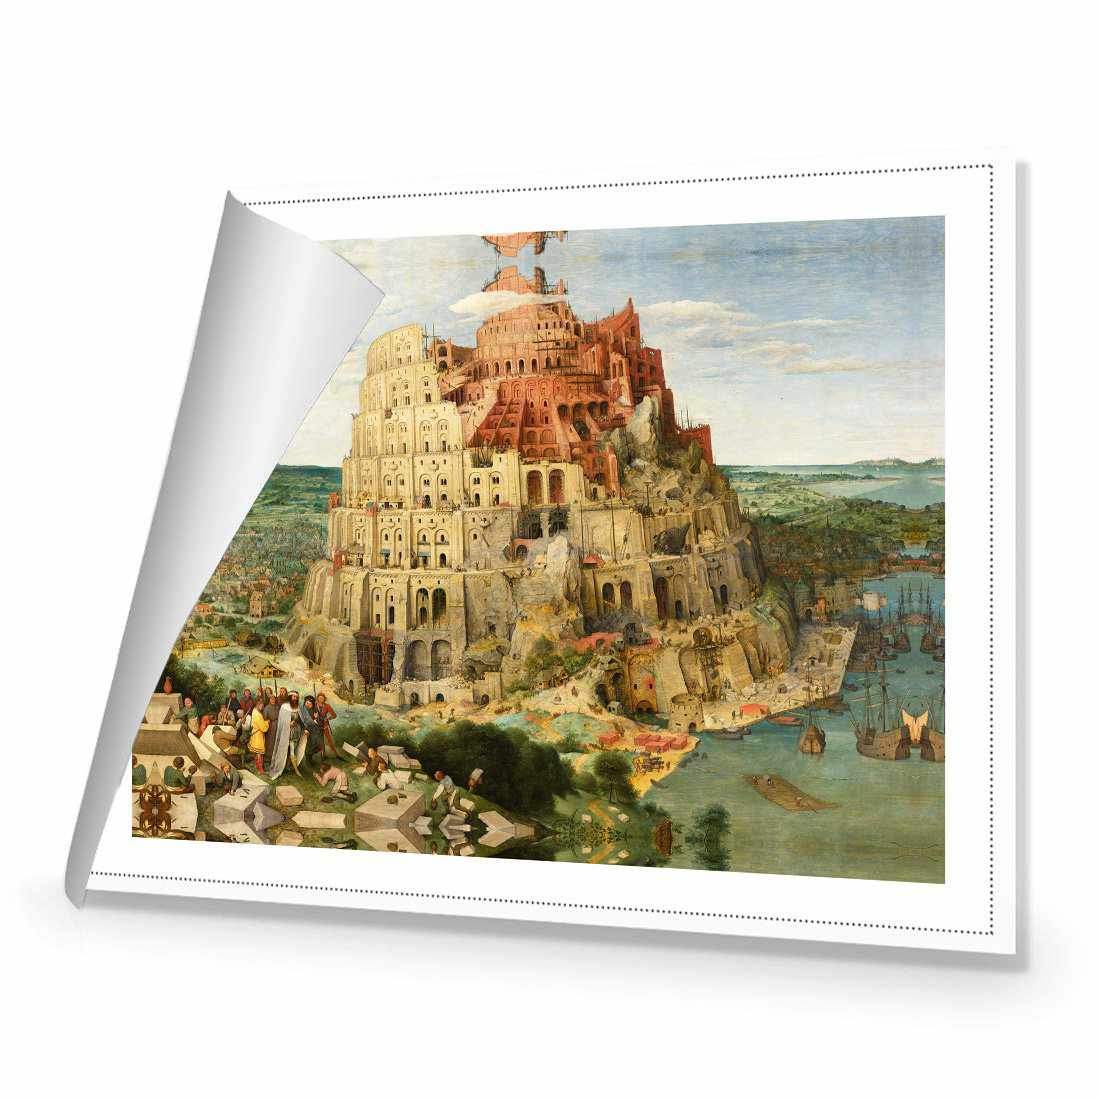 Tower Of Babel - Pieter Bruegel The Elder Canvas Art-Canvas-Wall Art Designs-45x30cm-Rolled Canvas-Wall Art Designs